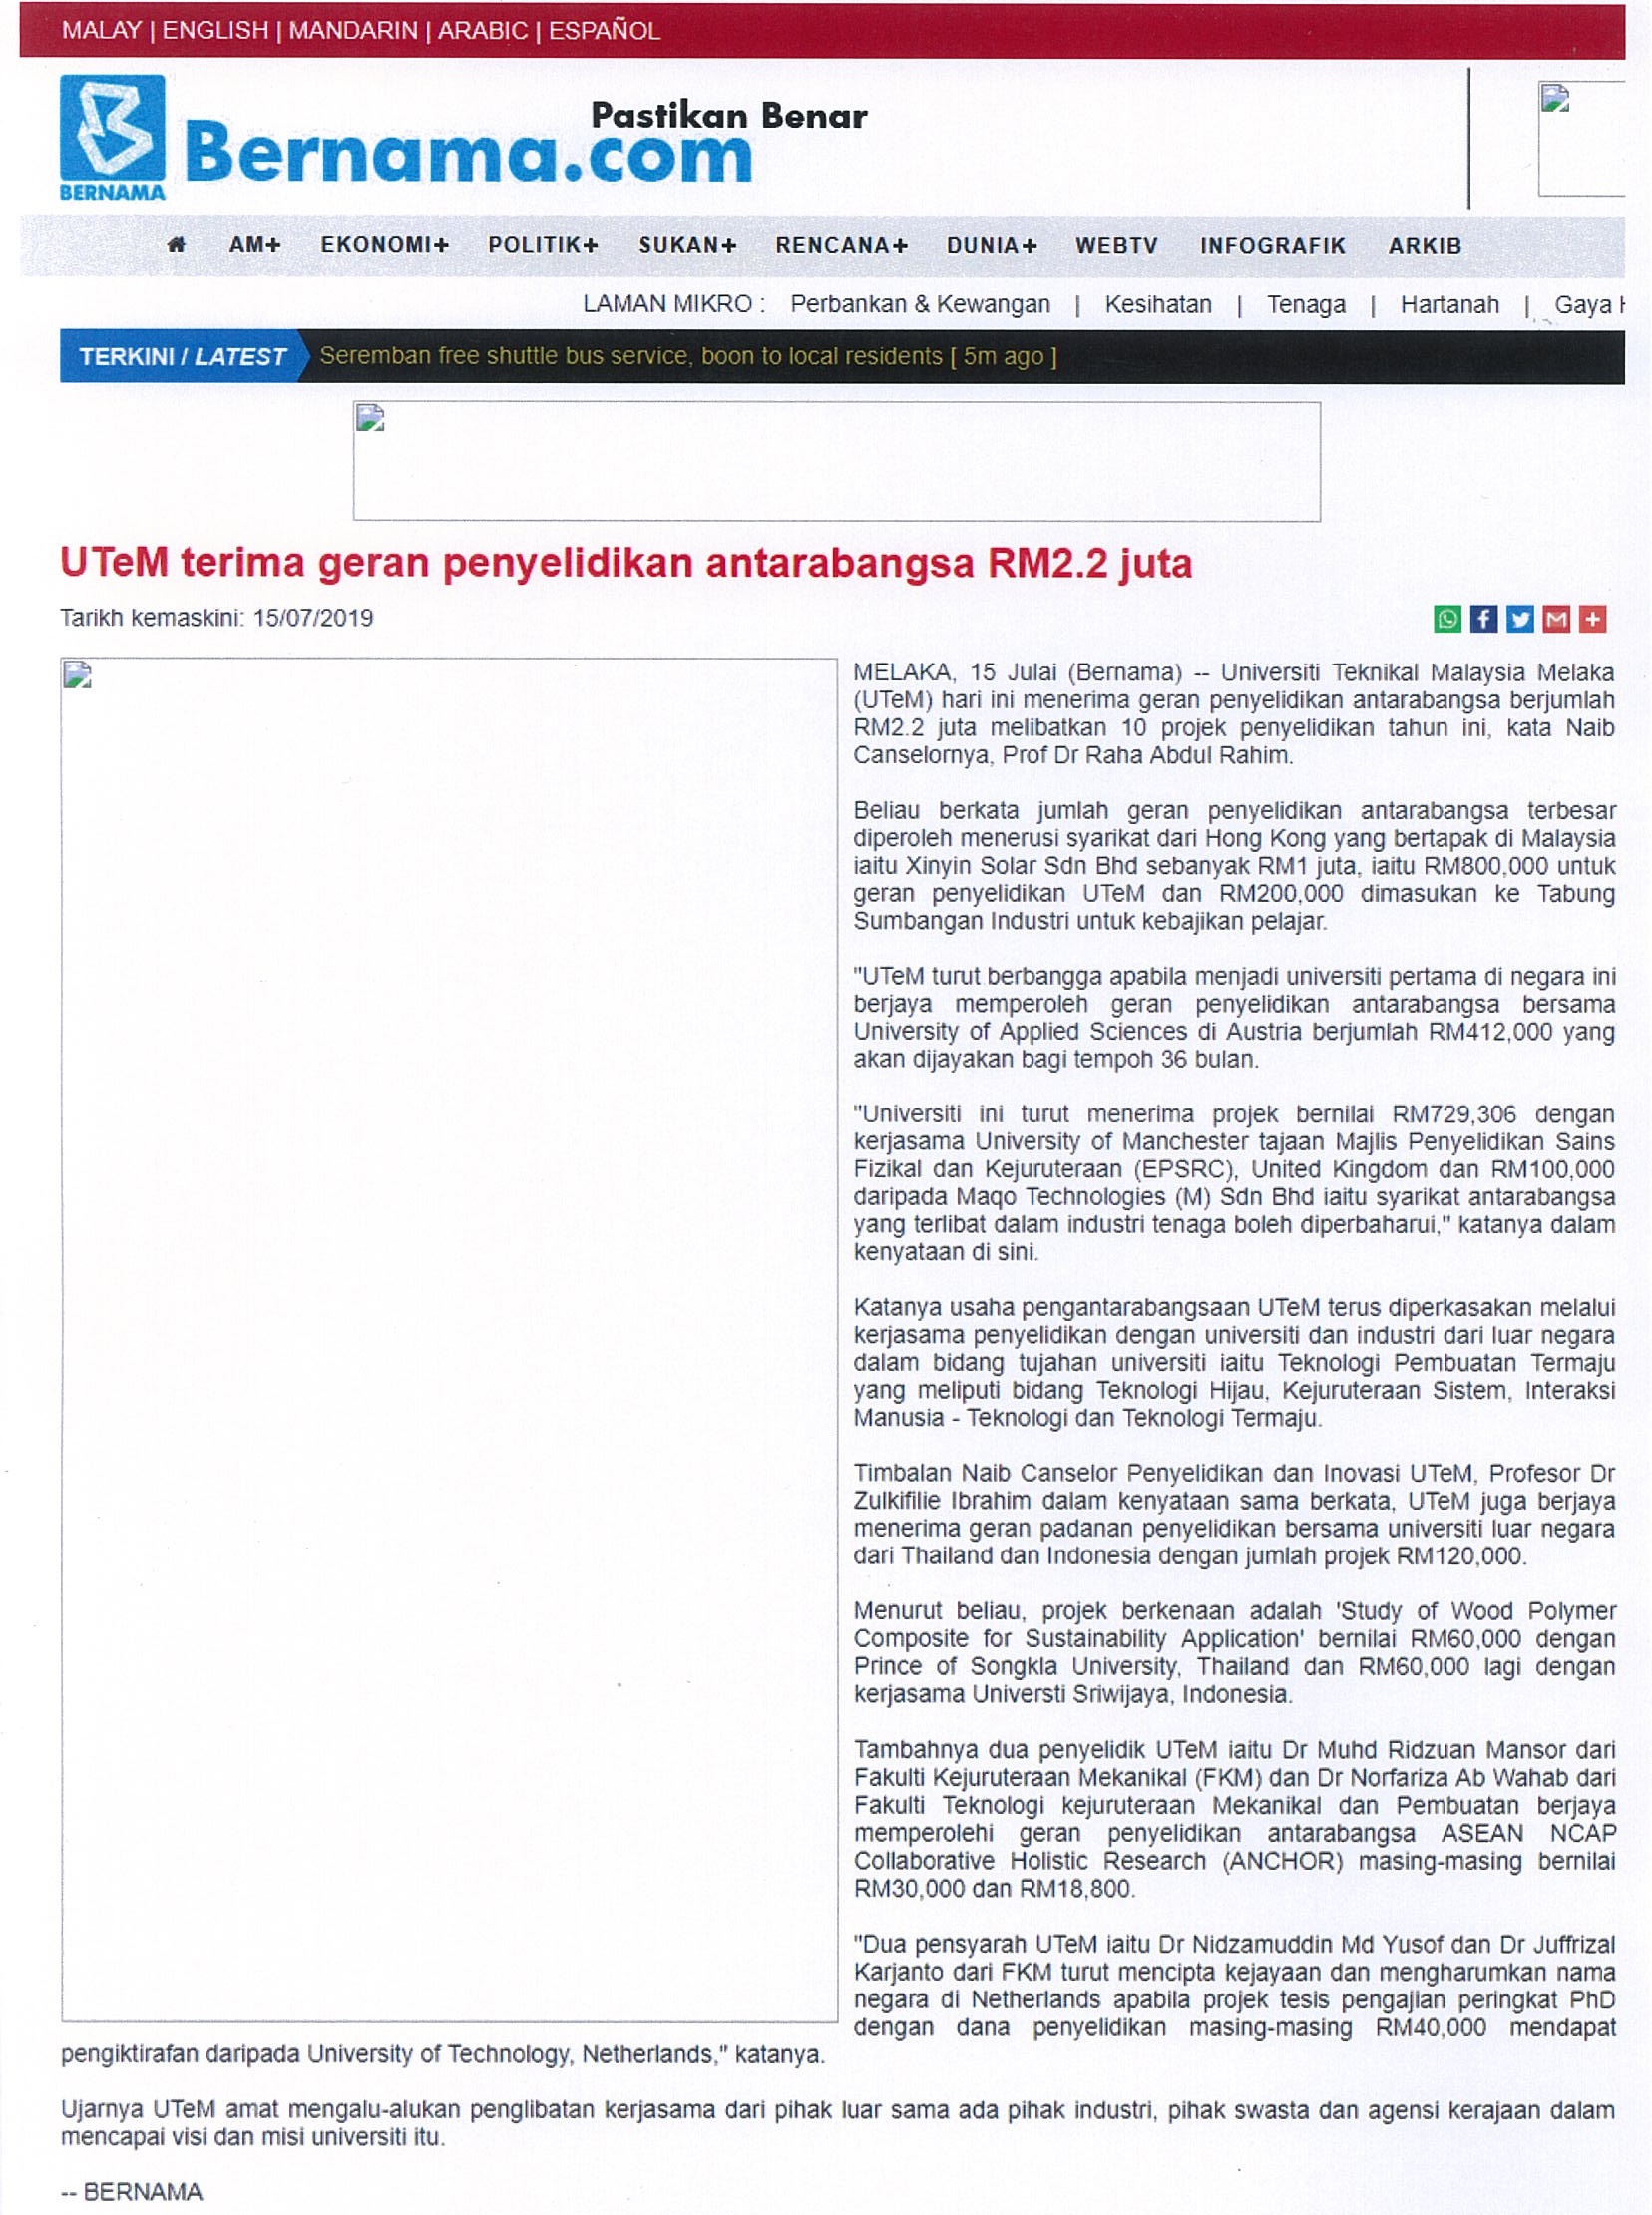 UTeM terima geran penyelidikan antarabangsa RM2.2juta